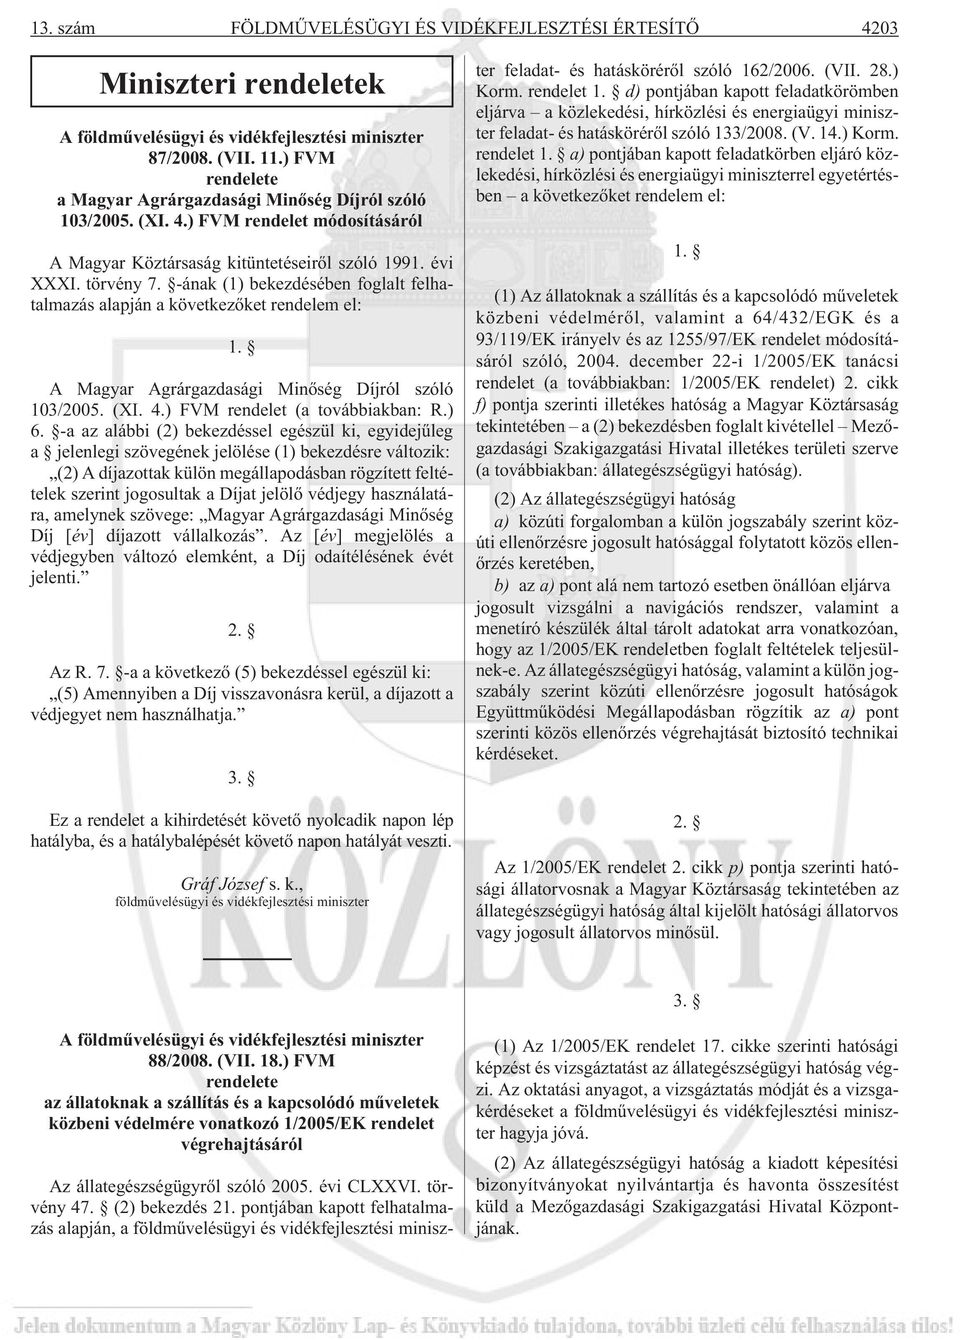 -ának (1) bekezdésében foglalt felhatalmazás alapján a következõket rendelem el: 1. A Magyar Agrárgazdasági Minõség Díjról szóló 103/2005. (XI. 4.) FVM rendelet (a továbbiakban: R.) 6.